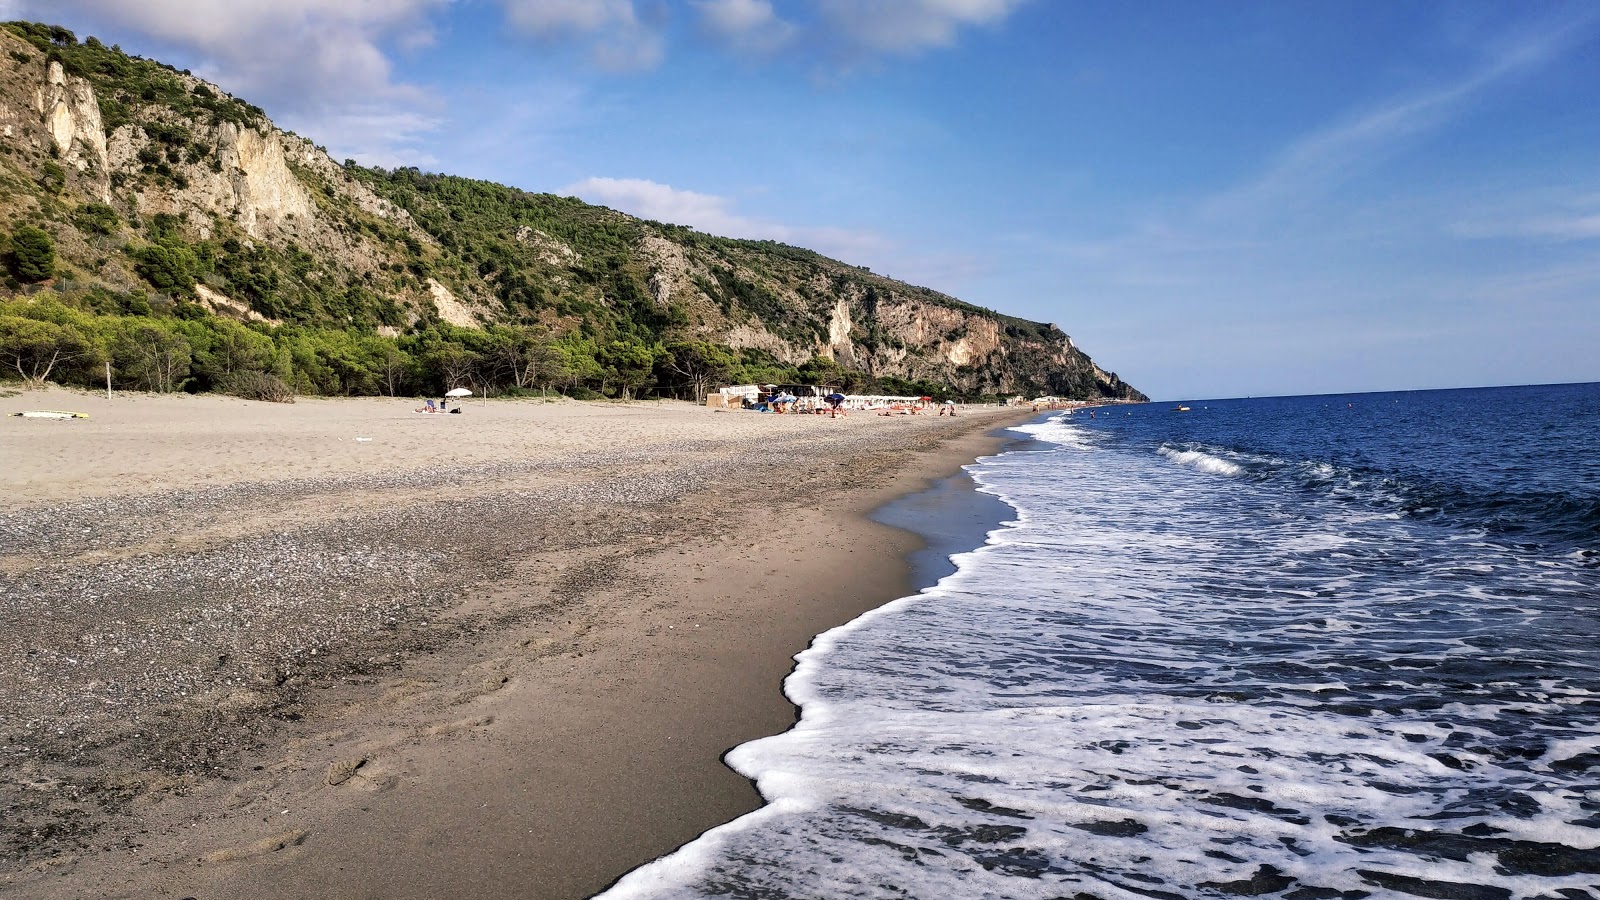 Fotografie cu Melibea beach cu o suprafață de nisip maro